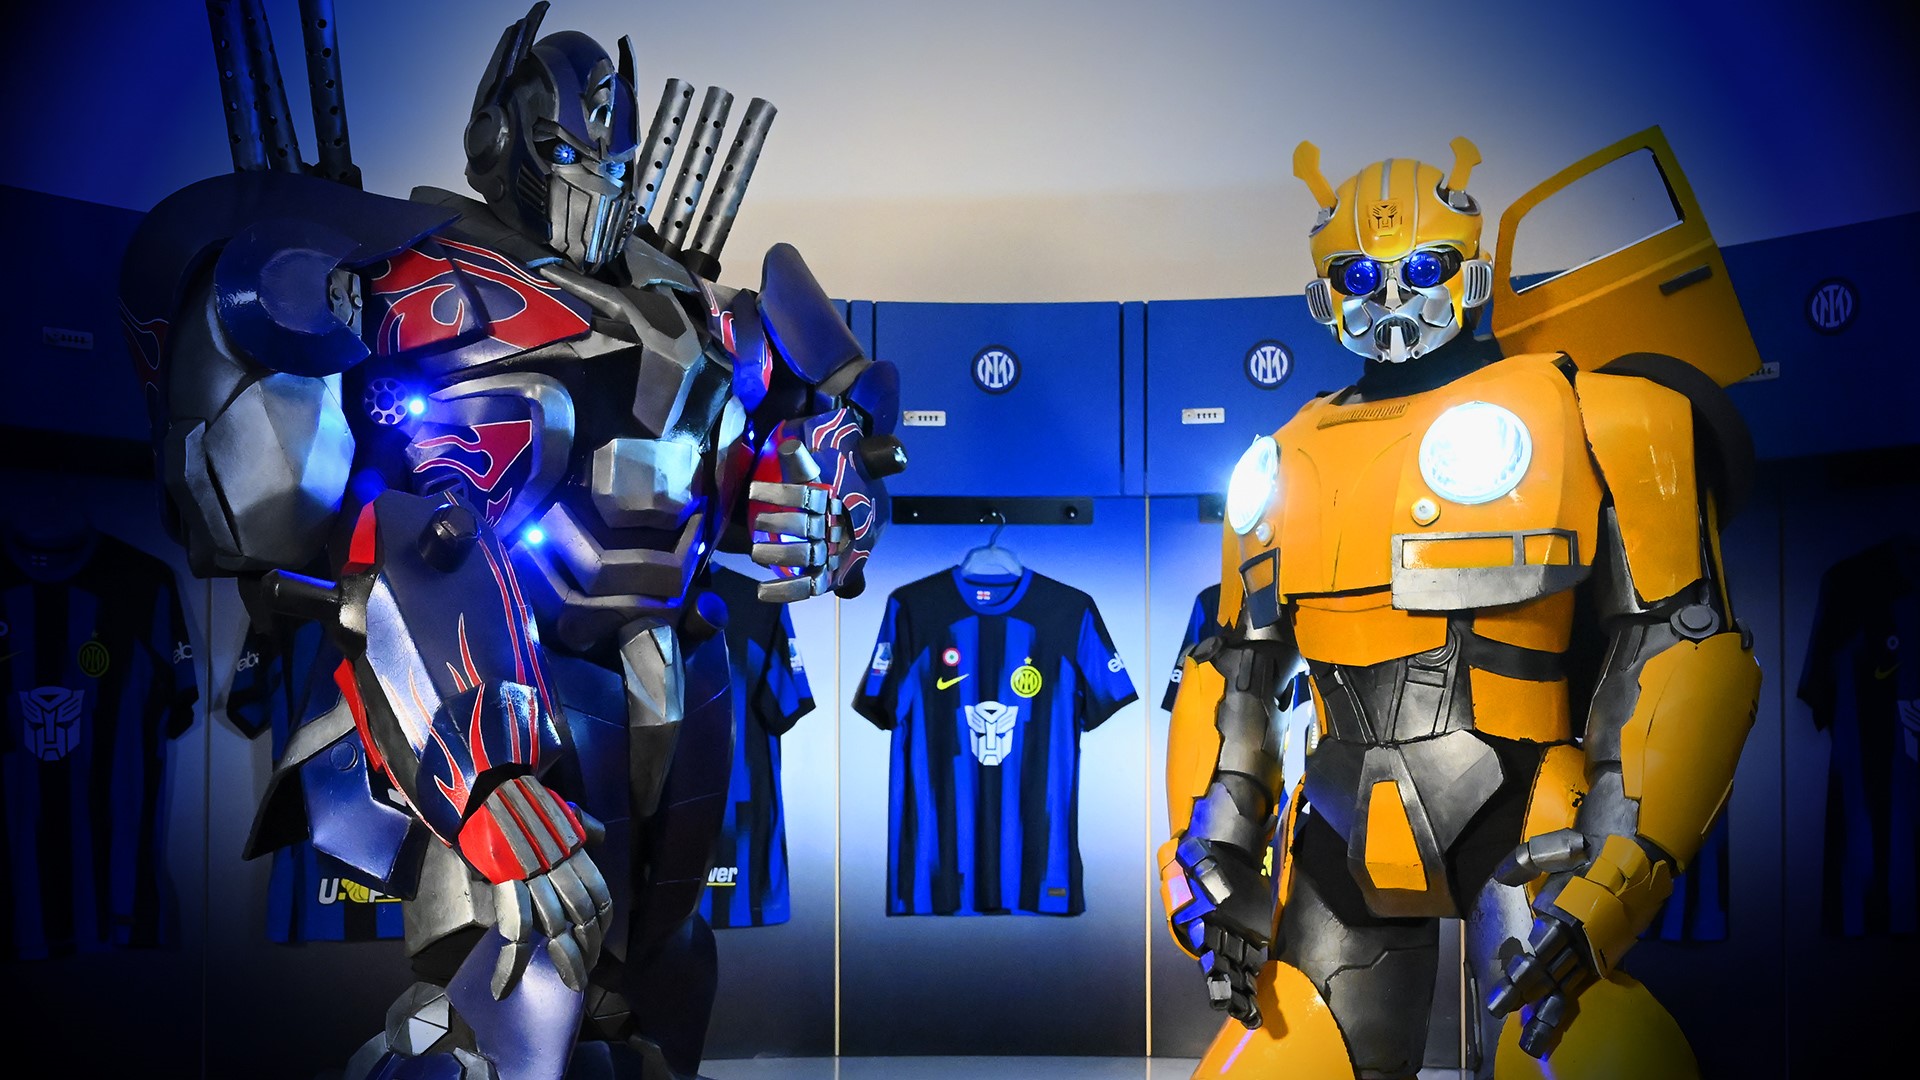 Inter e Paramount+ presentano la maglia home in edizione limitata dedicata alla saga Transformers